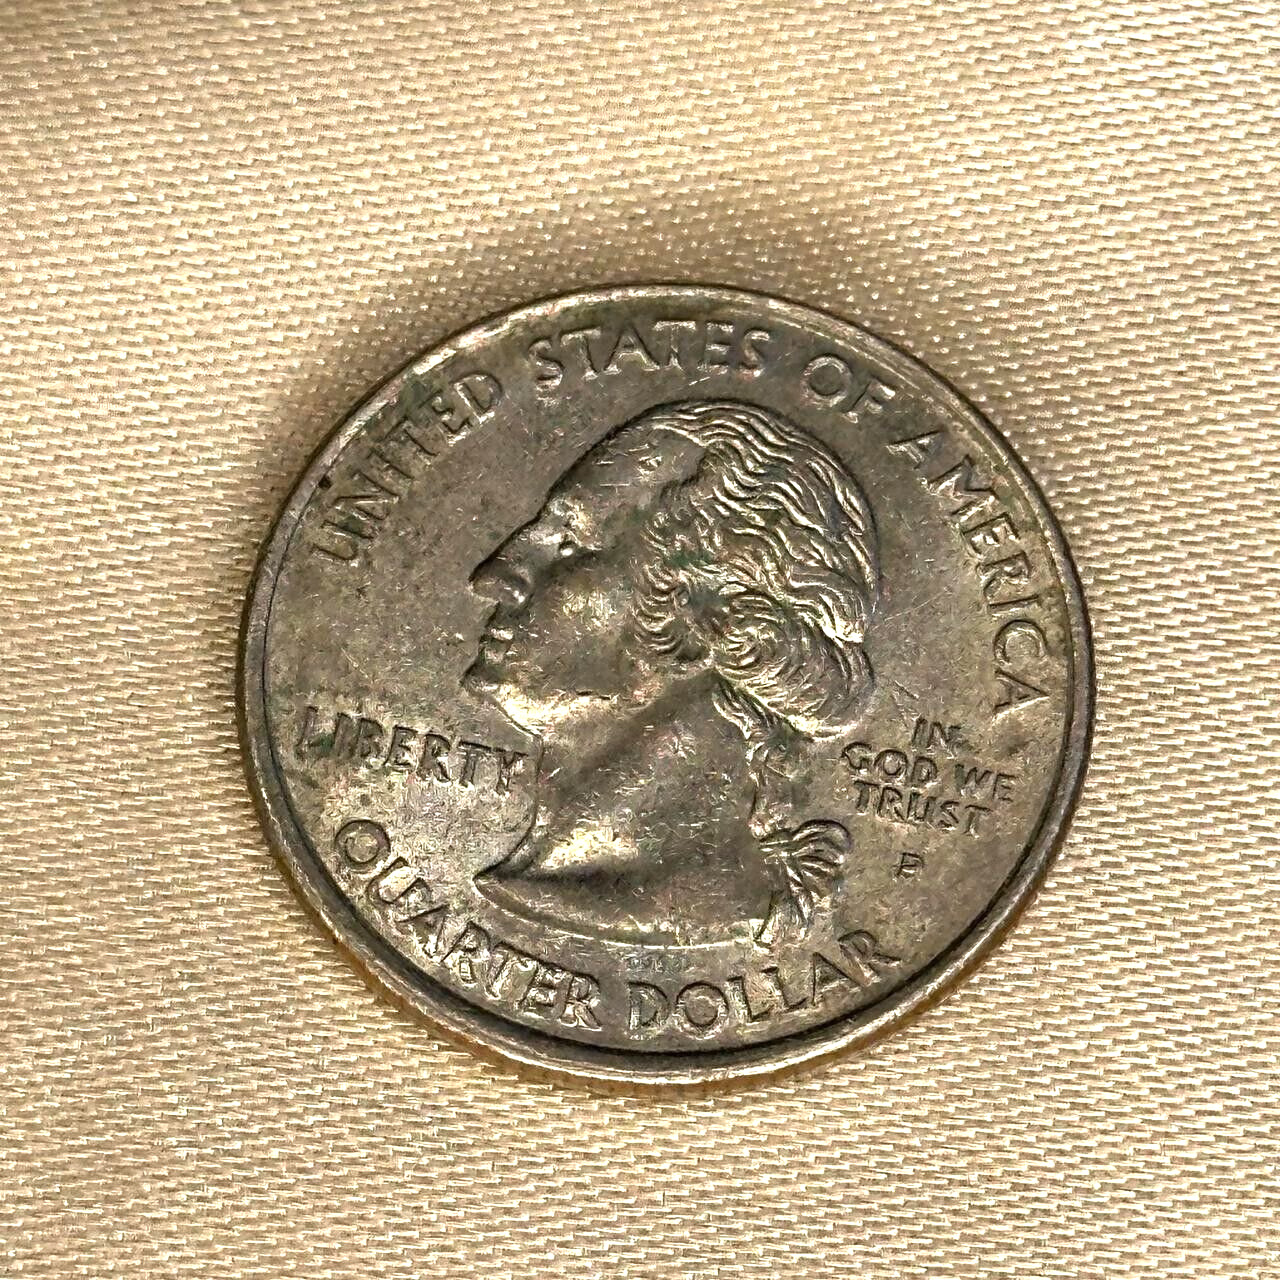 Vintage 1788-2001 Washington Quarter Dollar P Coin, Collectible Rare U.S